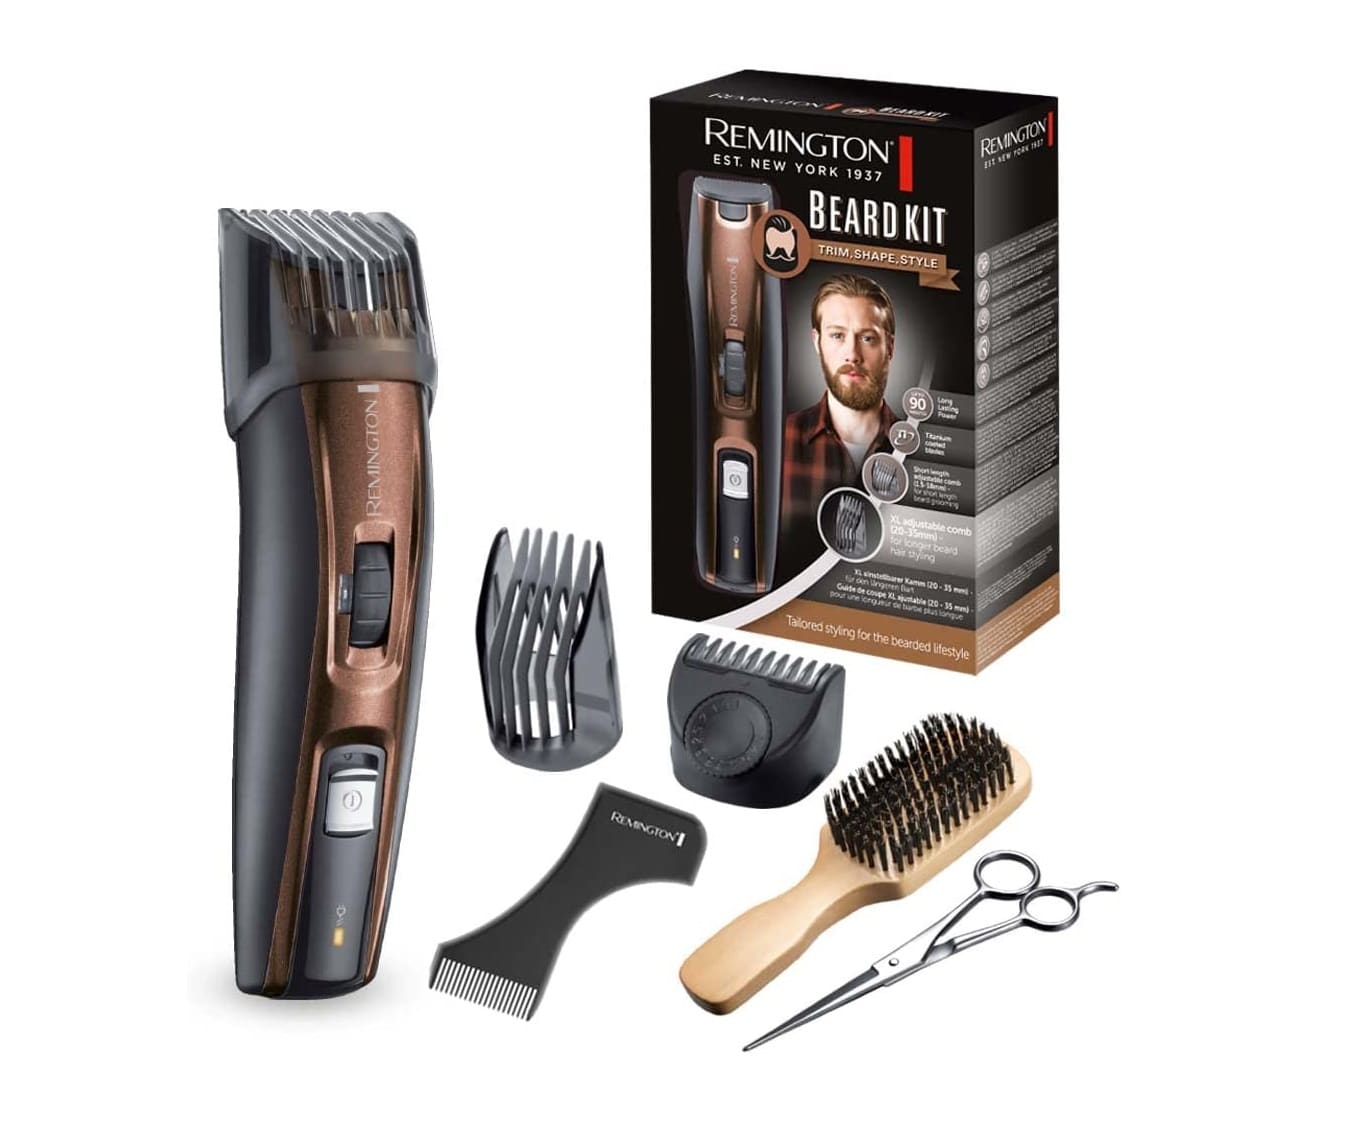 Meilleures tondeuses barbe 2022 - Beard Kit Remington MB4048